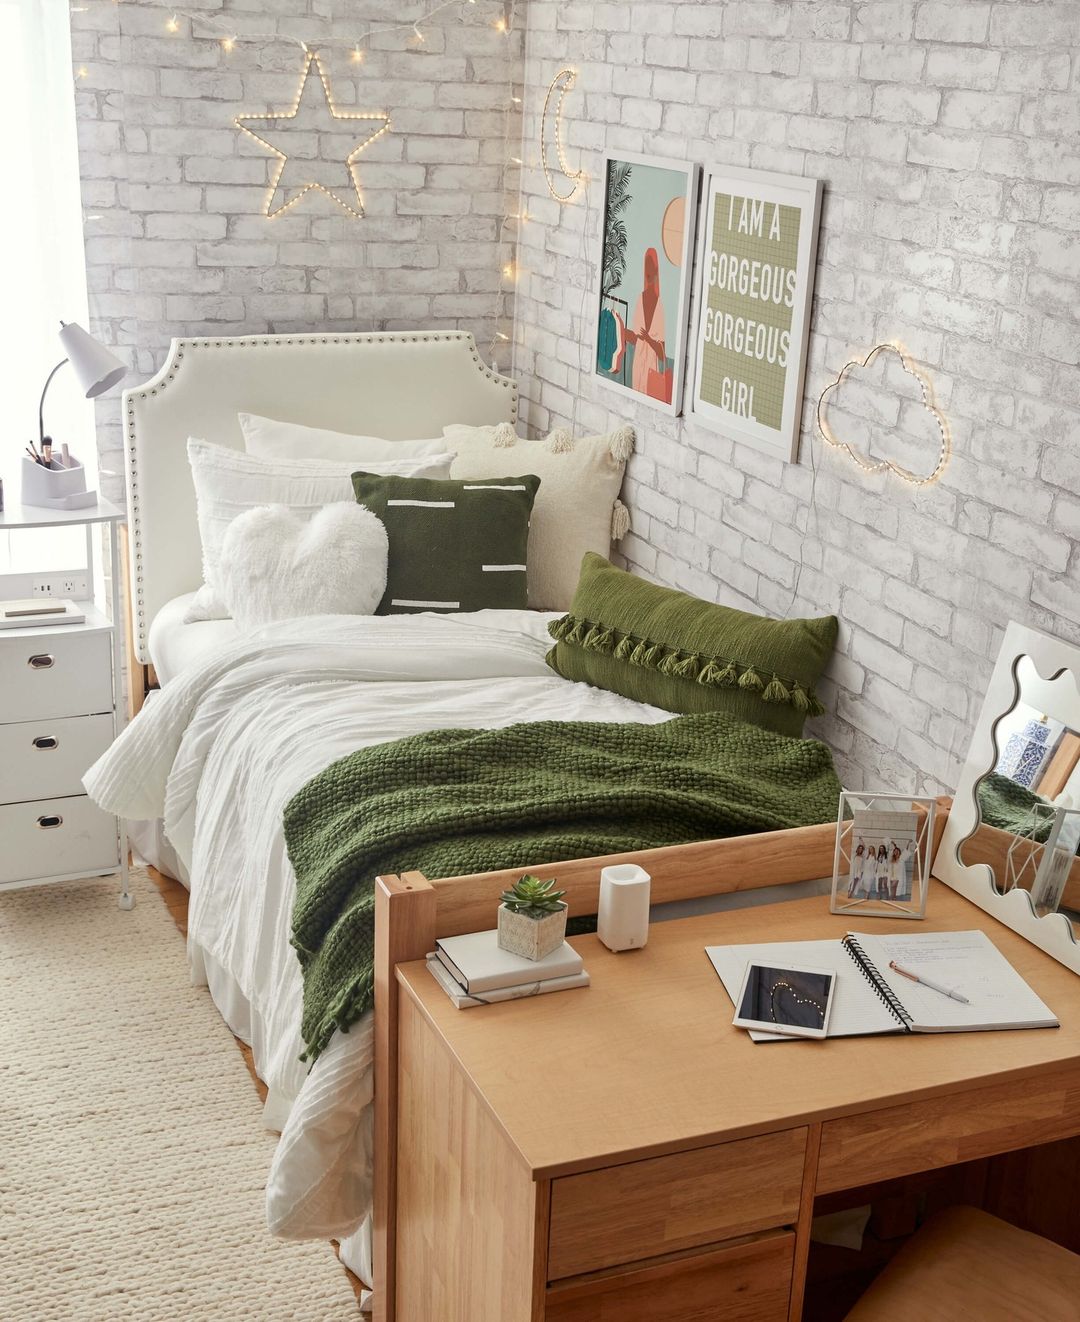 5 Unique Ways to Personalize Your Dorm Room Decor